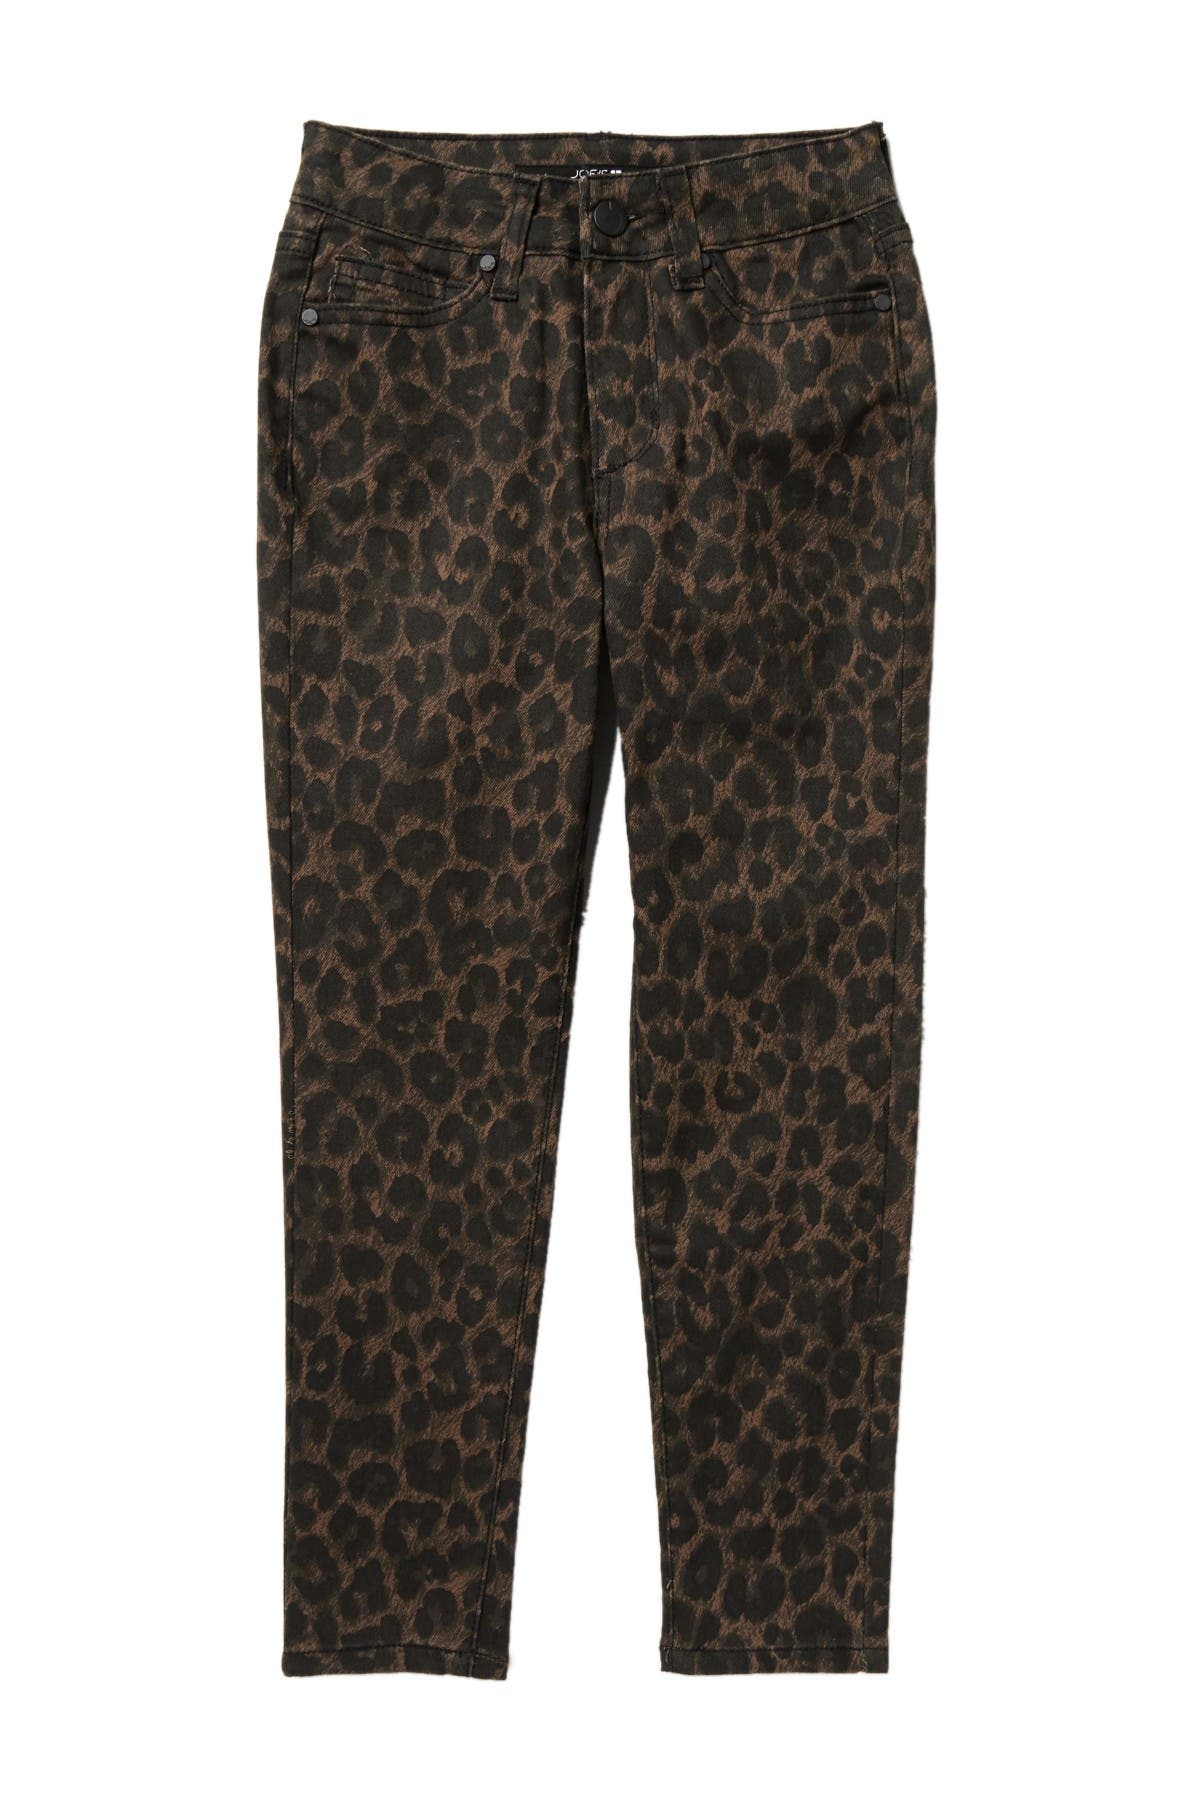 joe's jeans leopard